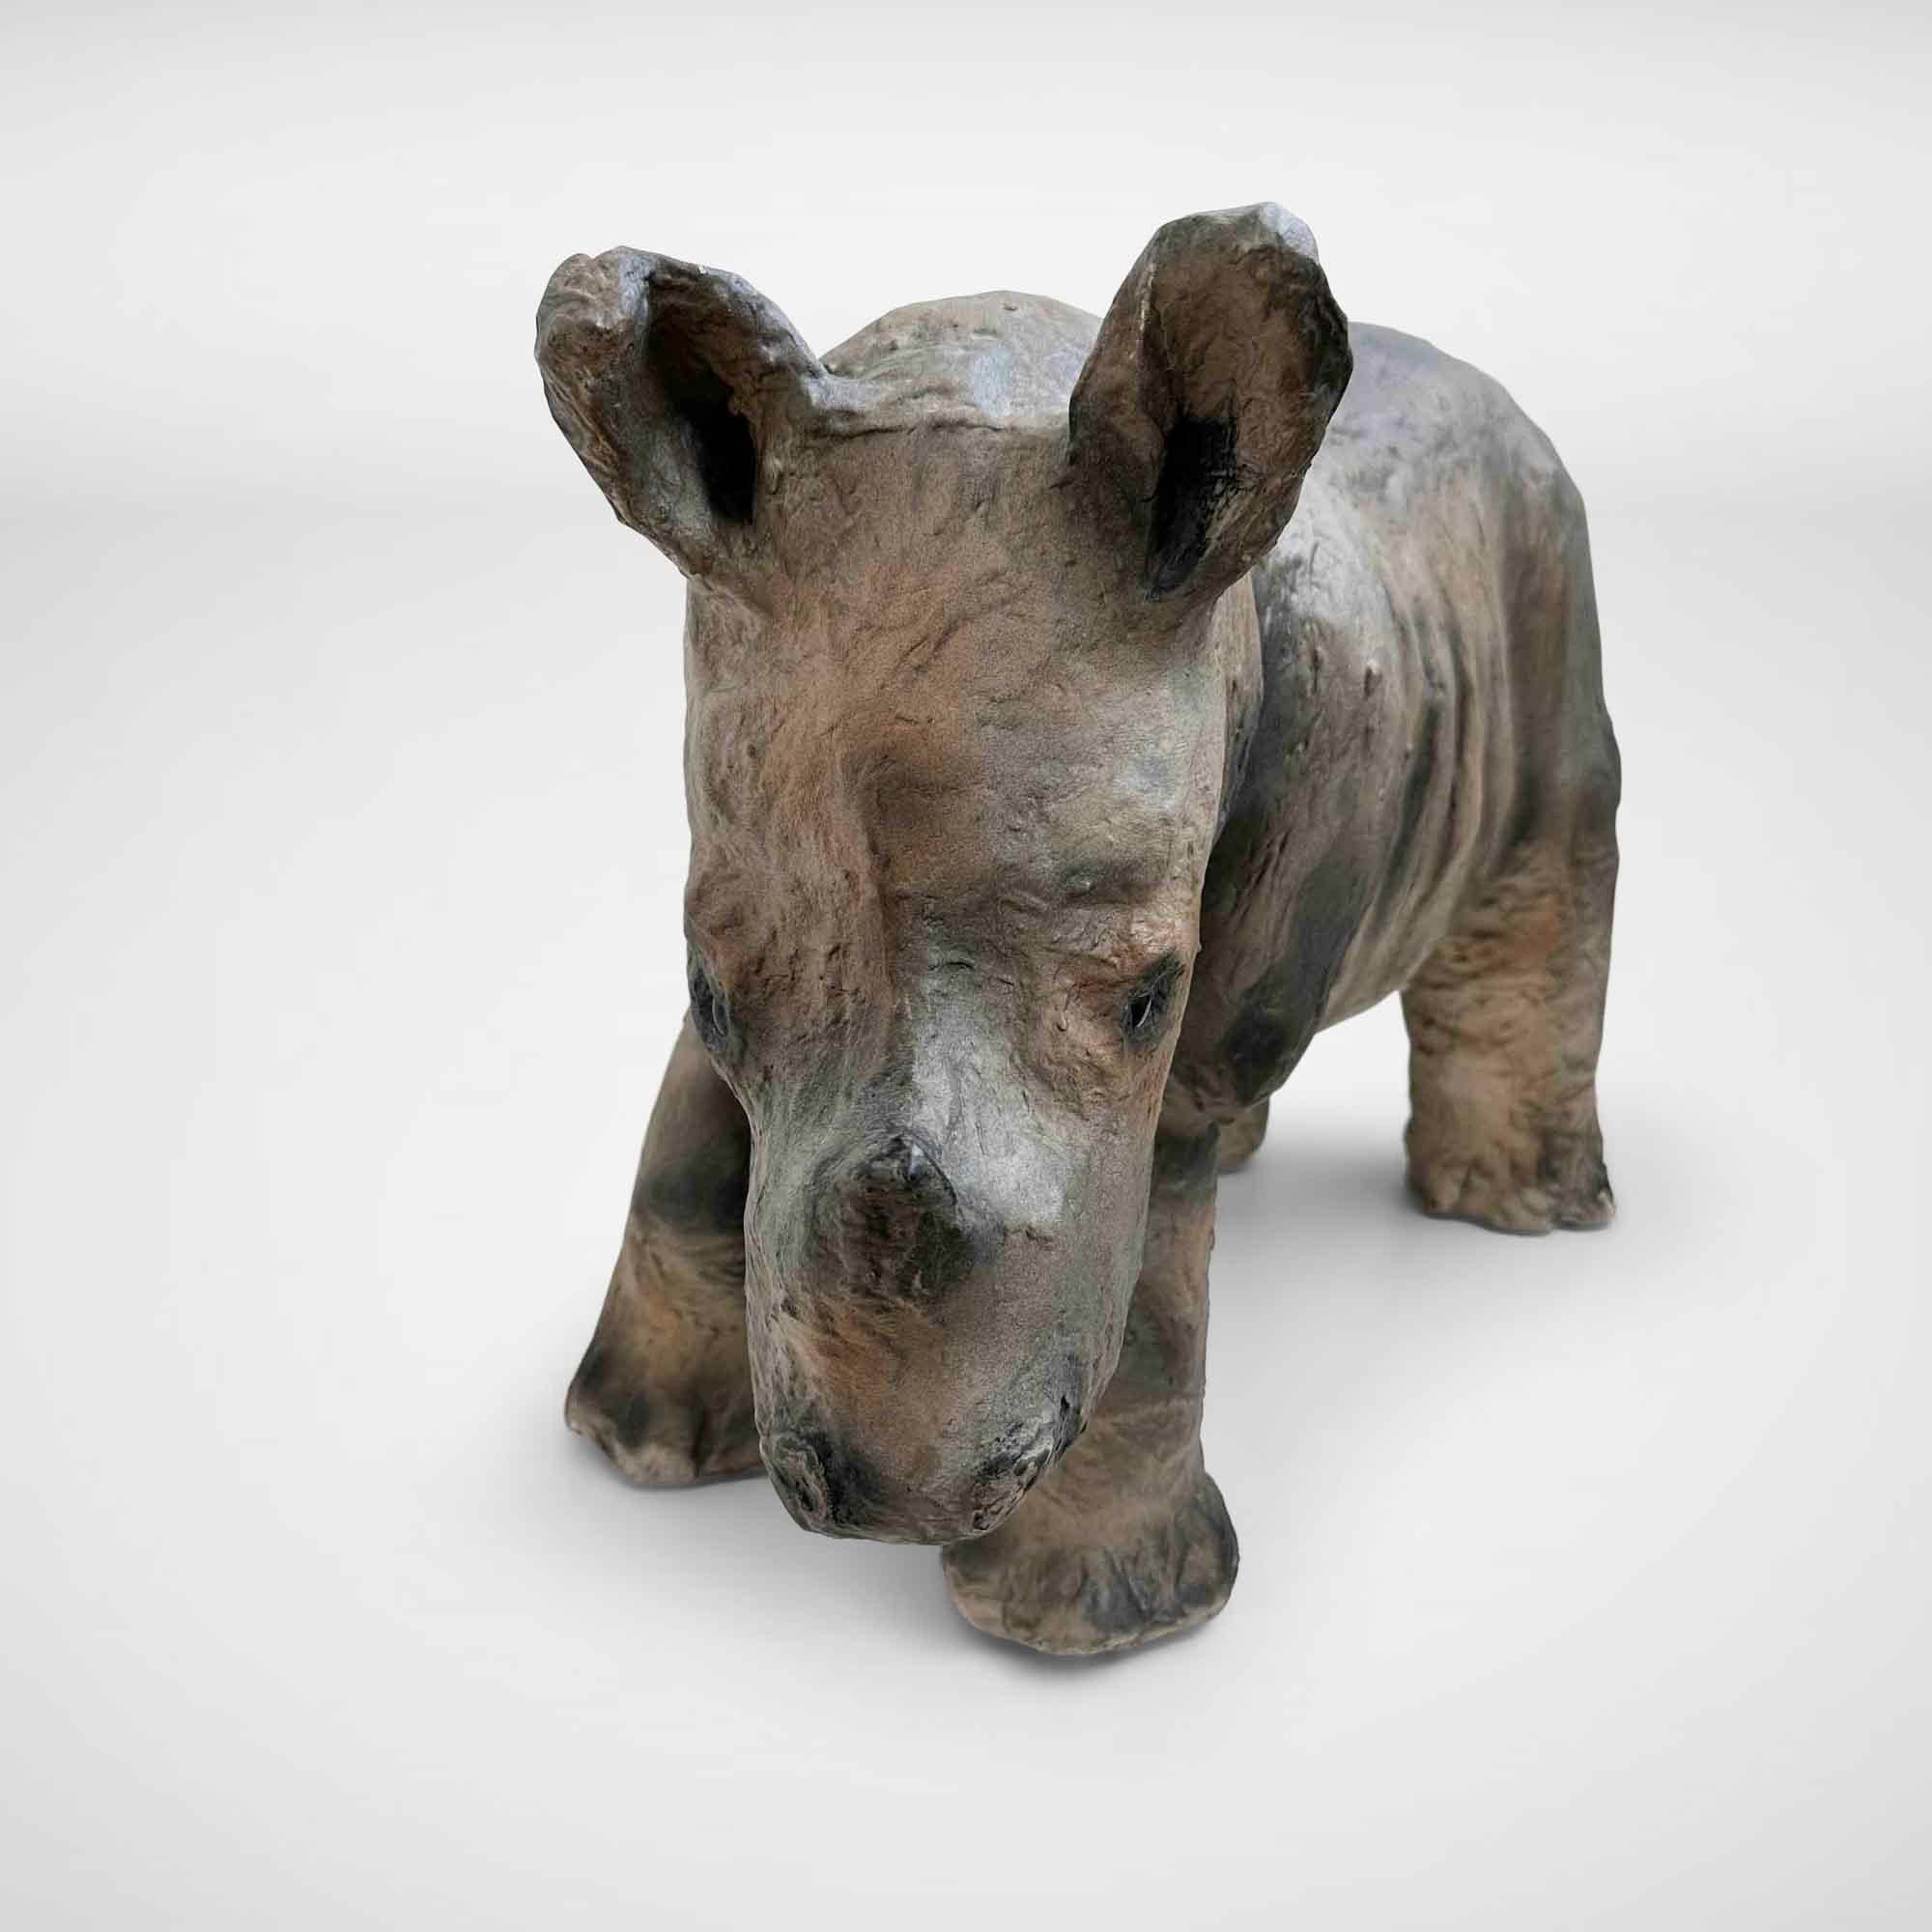 Un bébé rhinocéros réaliste en papier mâché. Les pattes et les oreilles présentent de légères traces d'usure. Ce rhinocéros provient de la Collectional d'un musée allemand et est encore dans son état d'origine.

Allemagne, années